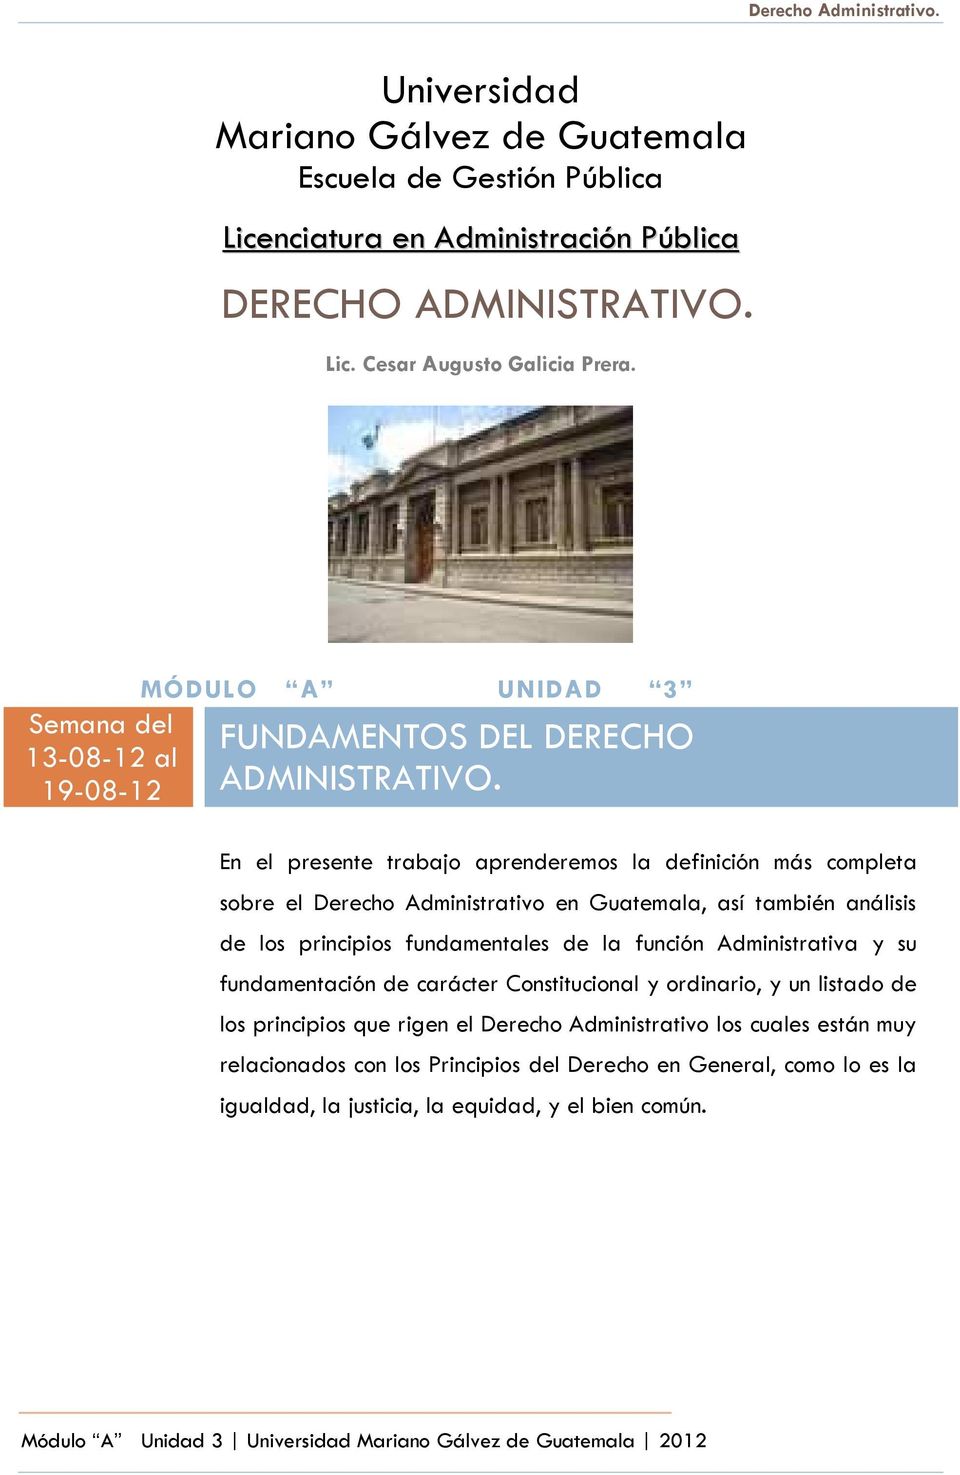 En el presente trabajo aprenderemos la definición más completa sobre el Derecho Administrativo en Guatemala, así también análisis de los principios fundamentales de la función